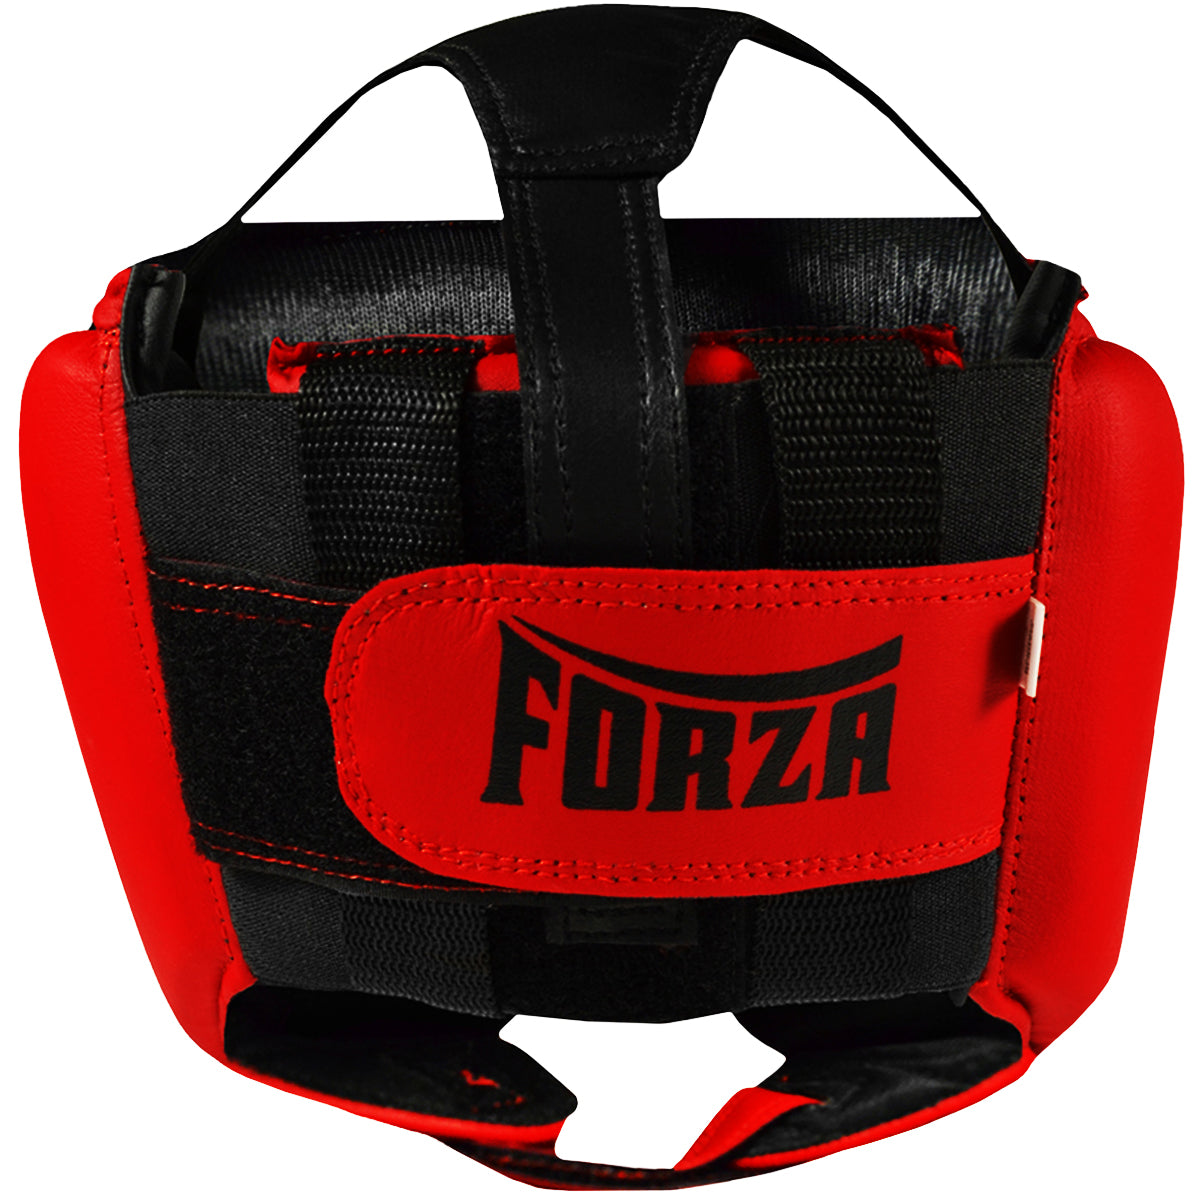 Forza Sports Vinyl Full Face Boxing and MMA Headgear - Red/Black Forza Sports